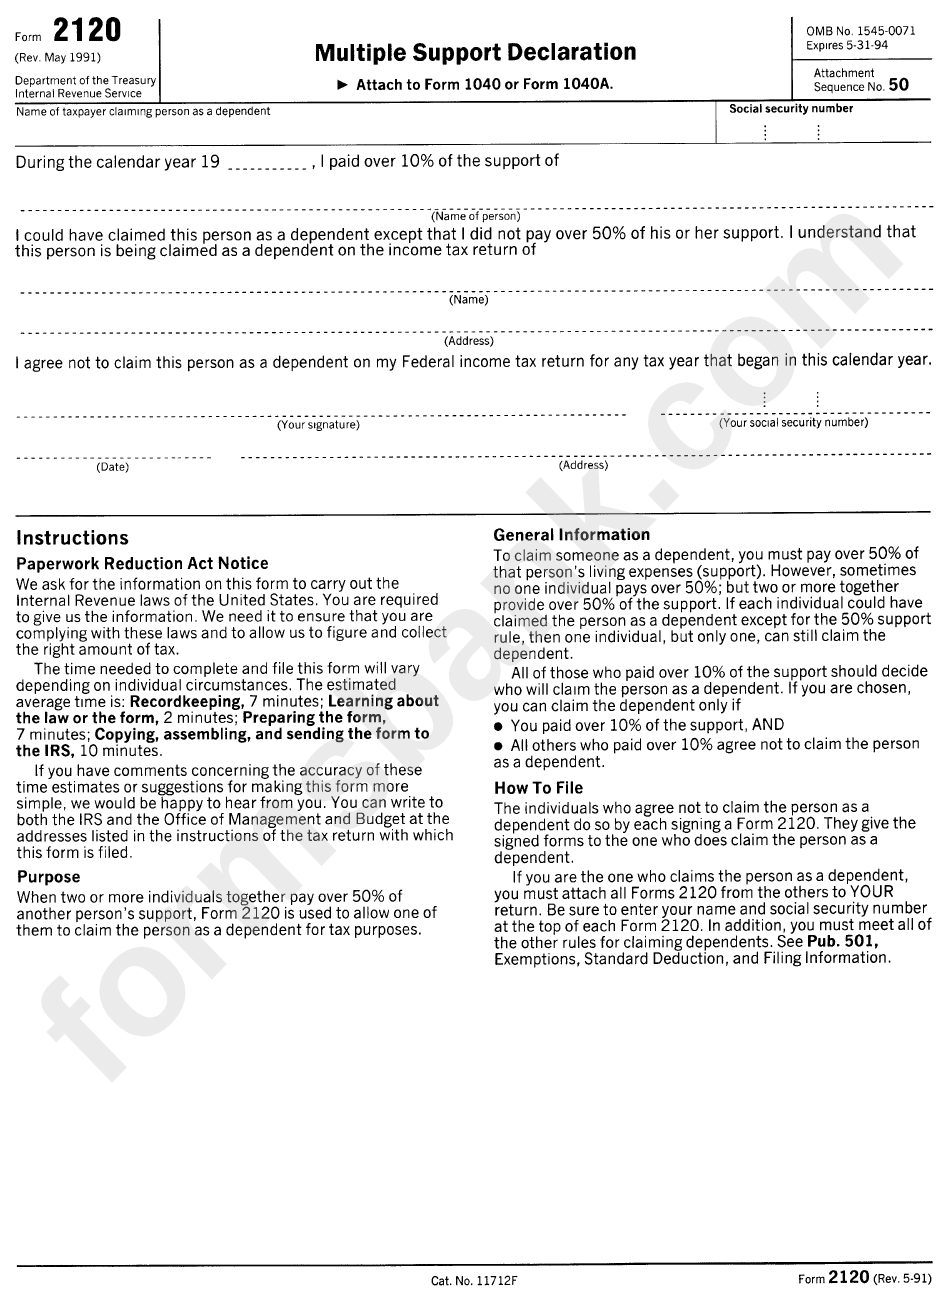 Form 2120 Multiple Support Declaration Printable Pdf Download